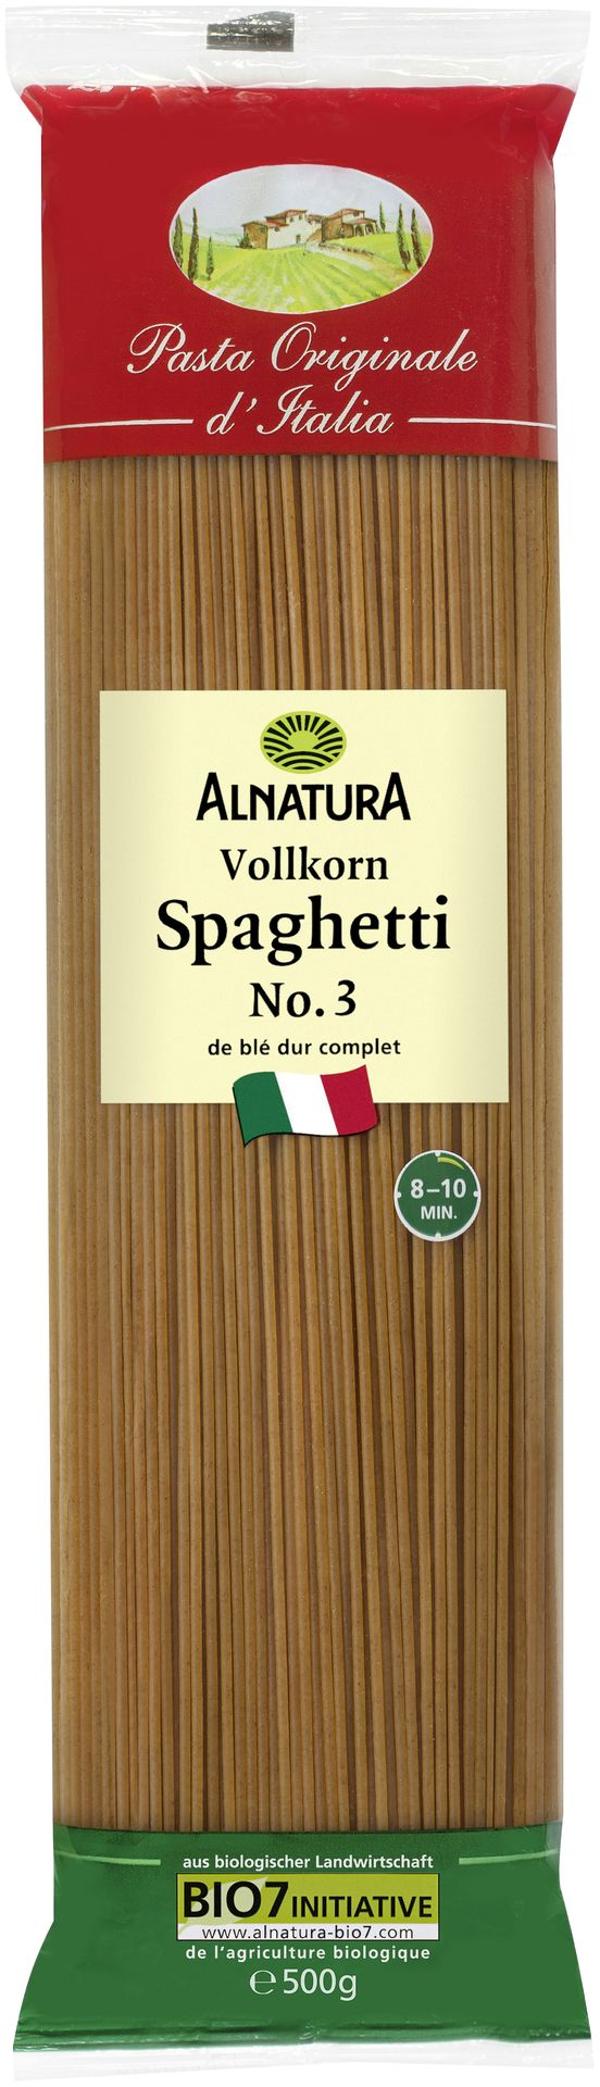 Produktfoto zu Spaghetti Vollkorn 500g Alnatura